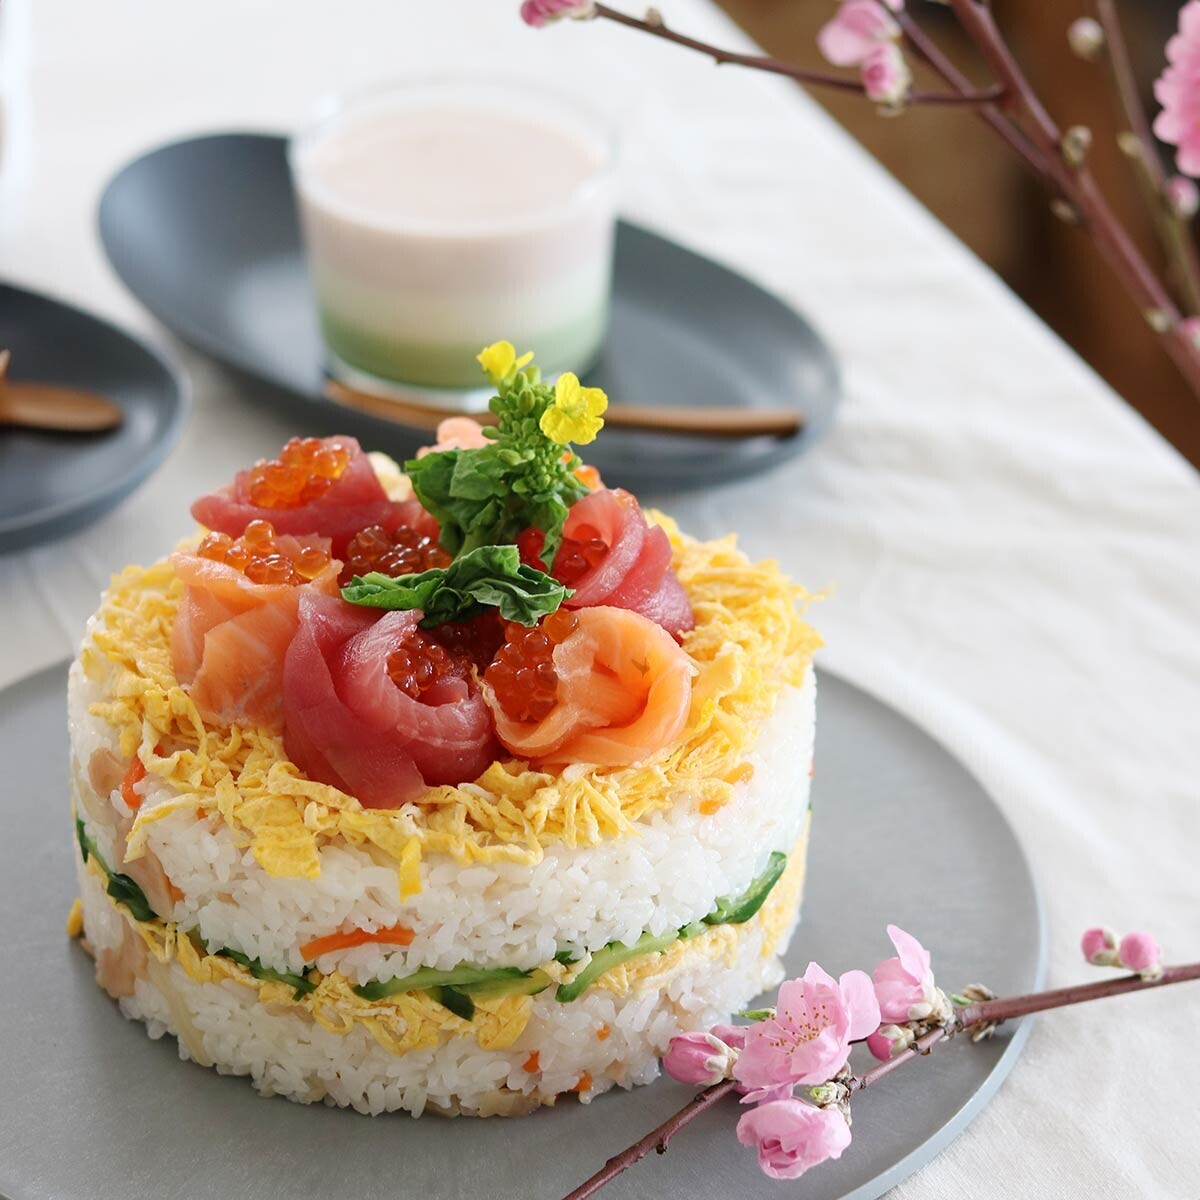 ひな祭りの食卓に、ちらし寿司の素で作る簡単「お寿司ケーキ」と「海老団子のあられ揚げ」